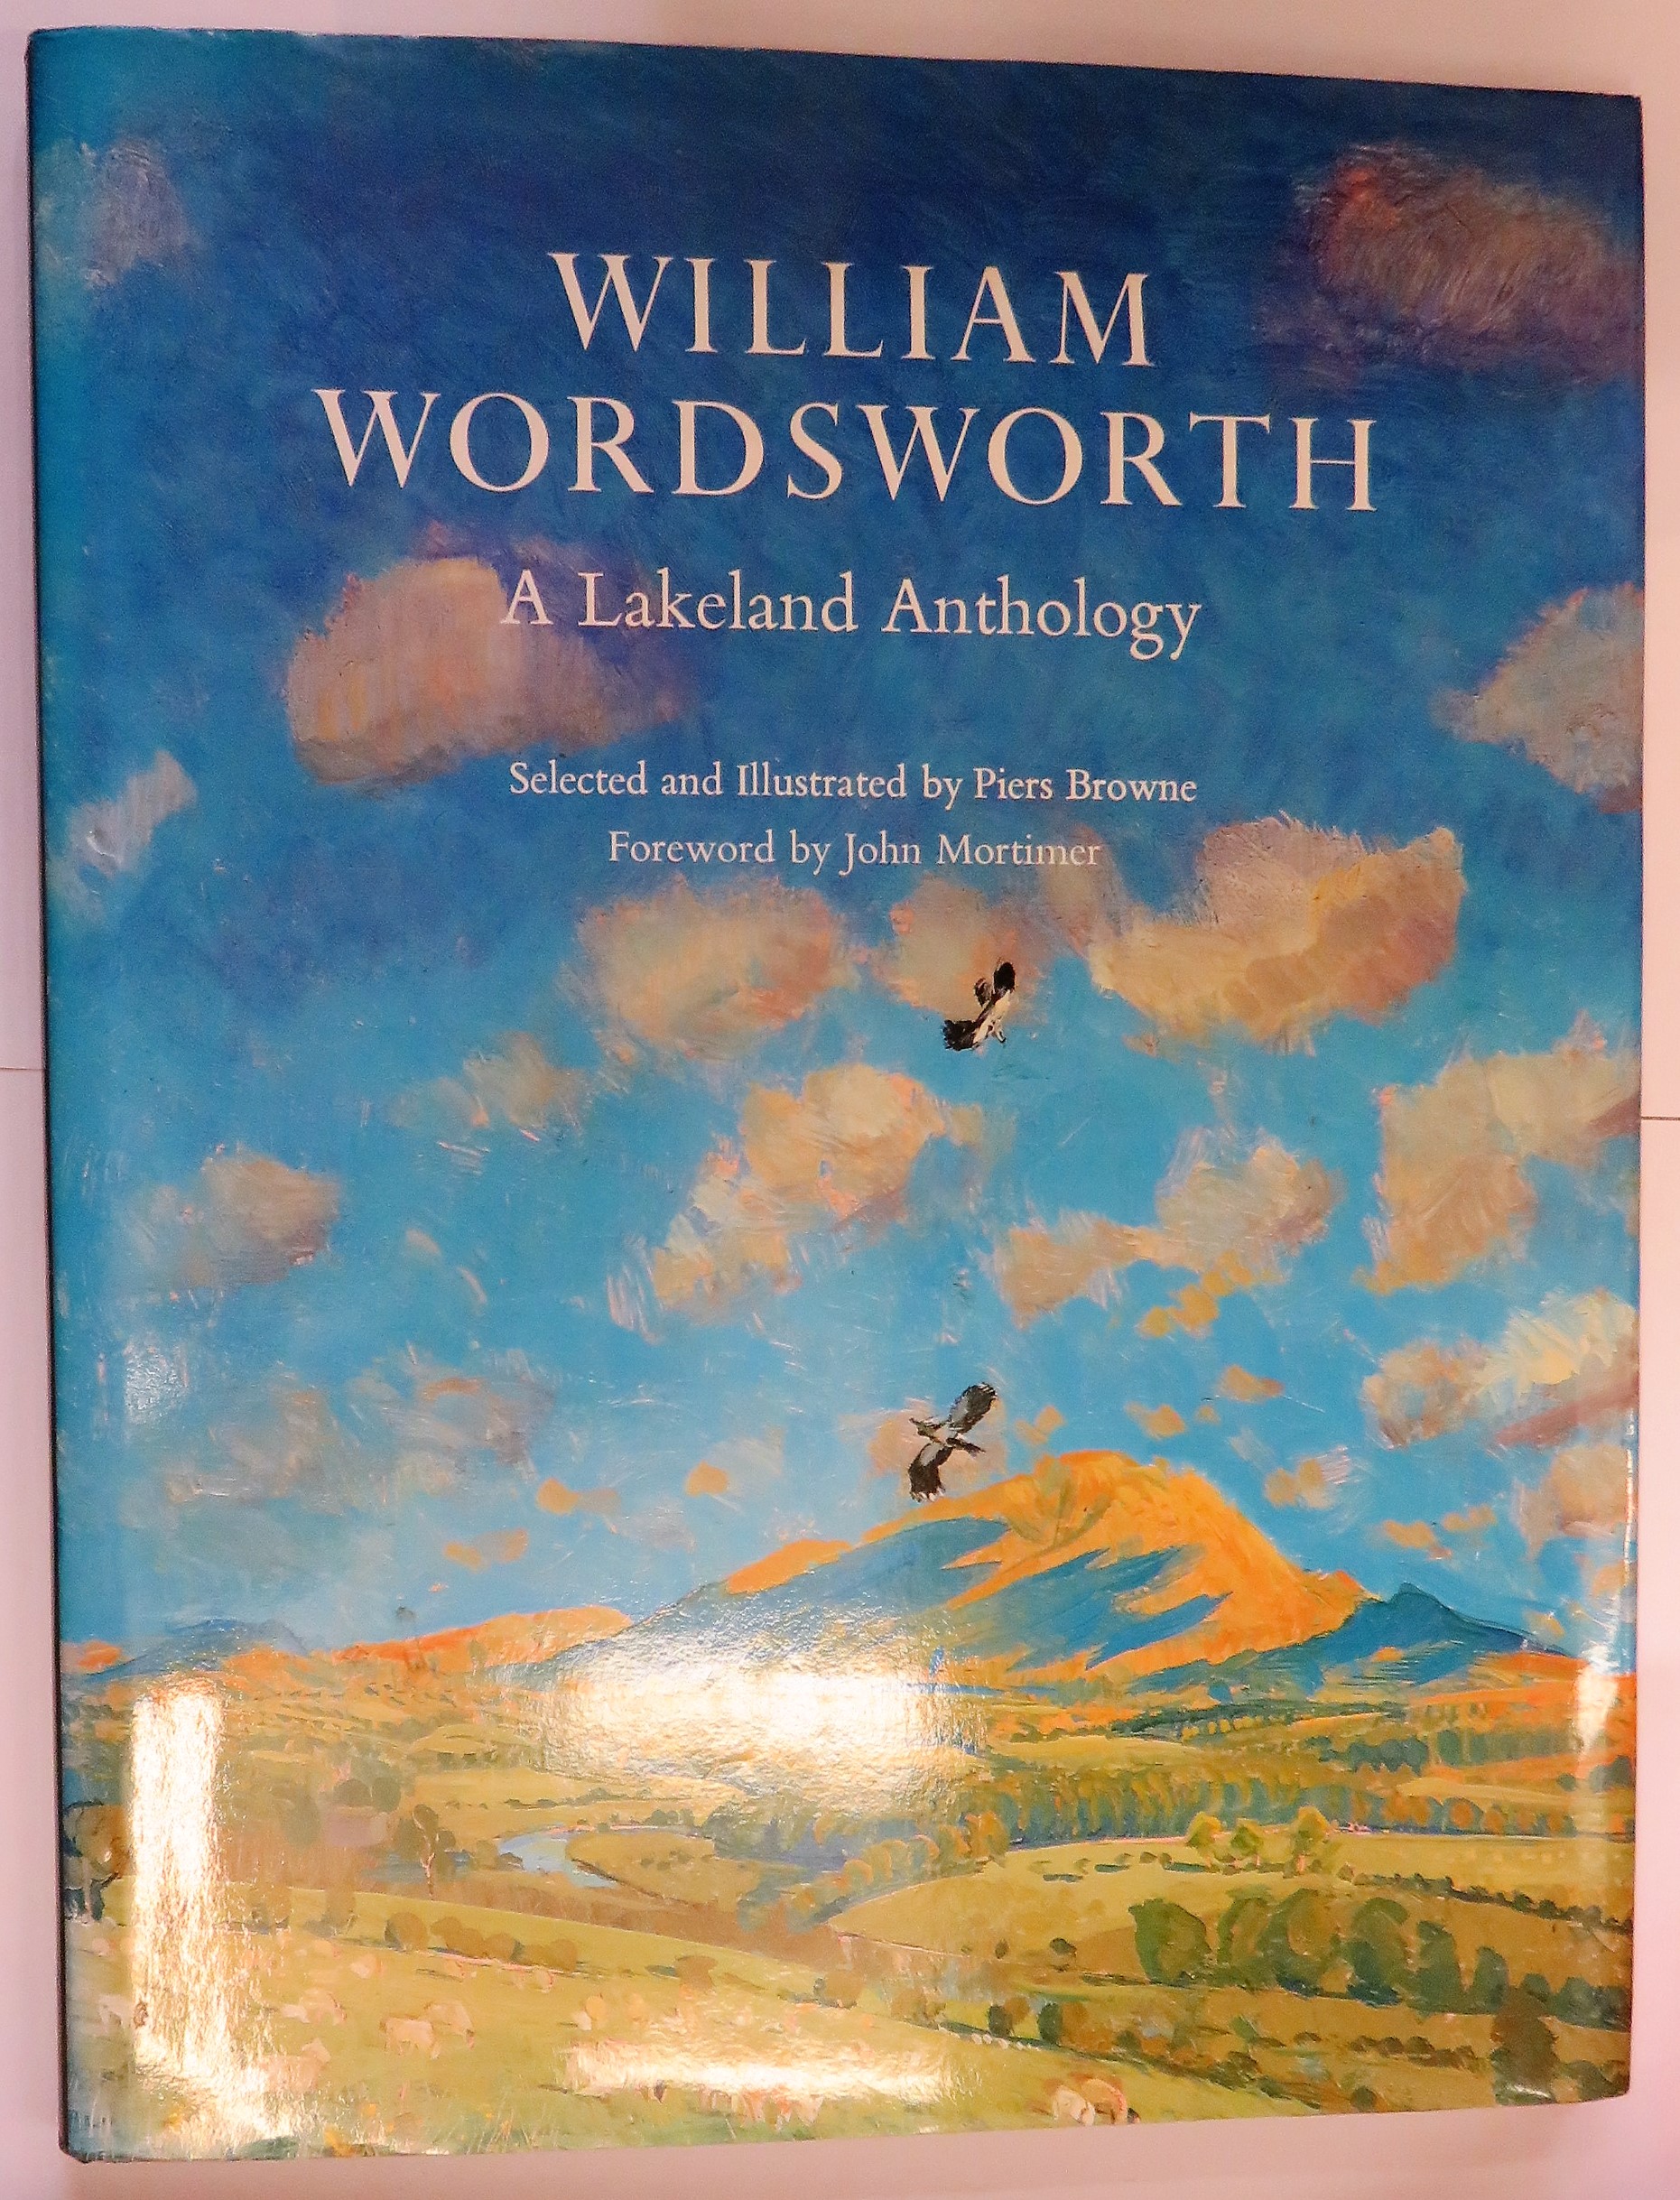 William Wordsworth: A Lakeland Anthology